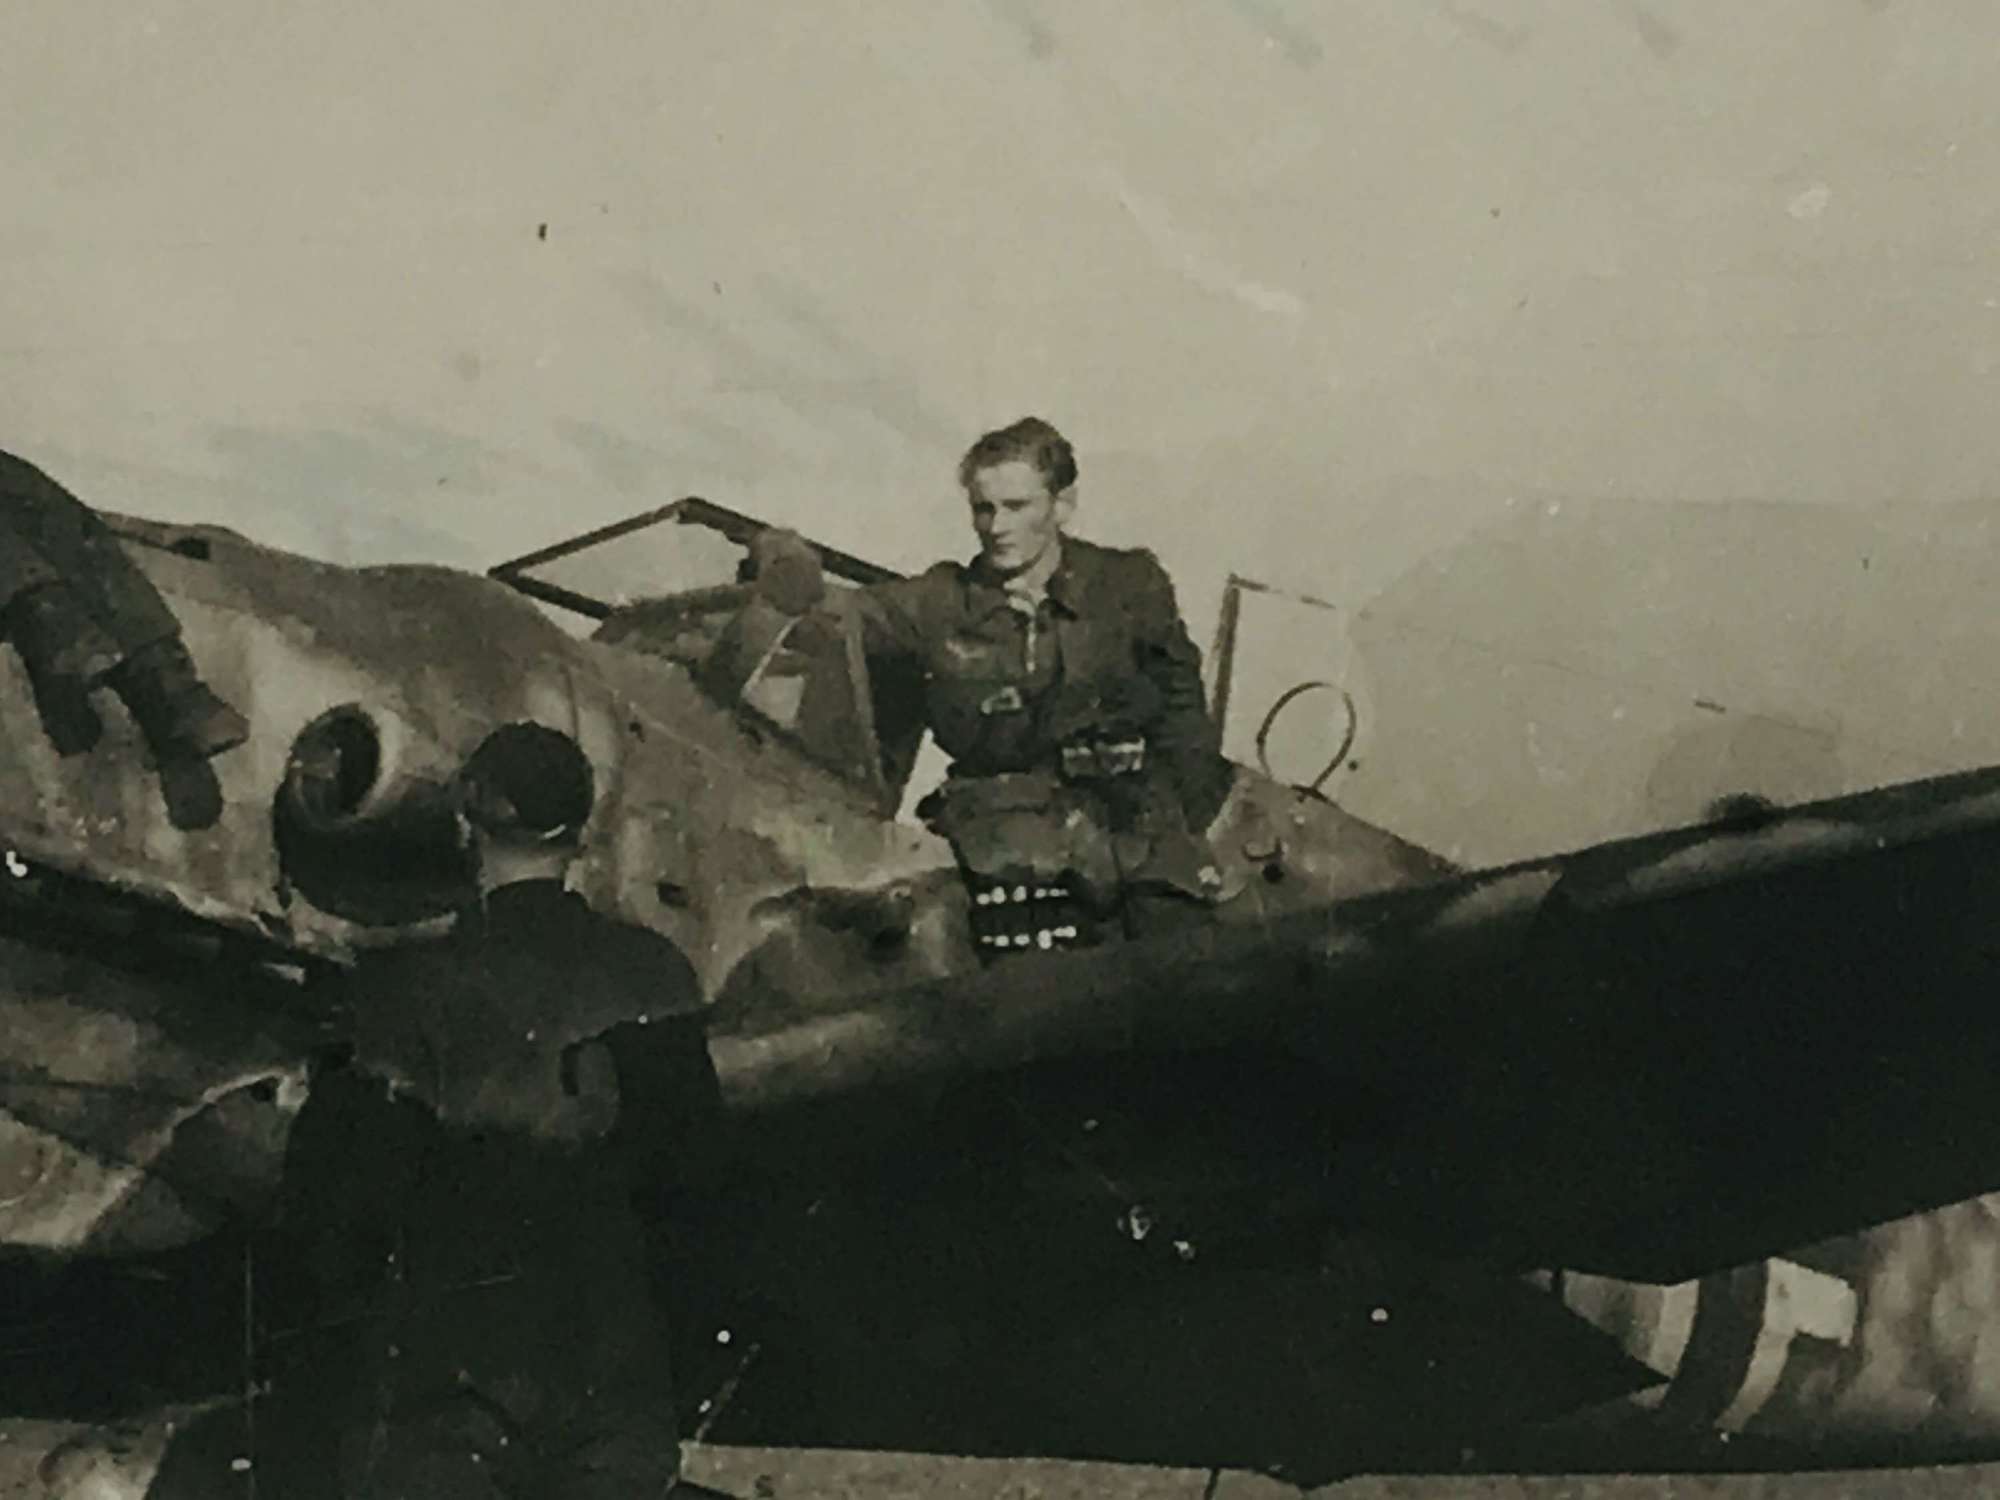 Messerschmitt BF 109 with Pilot